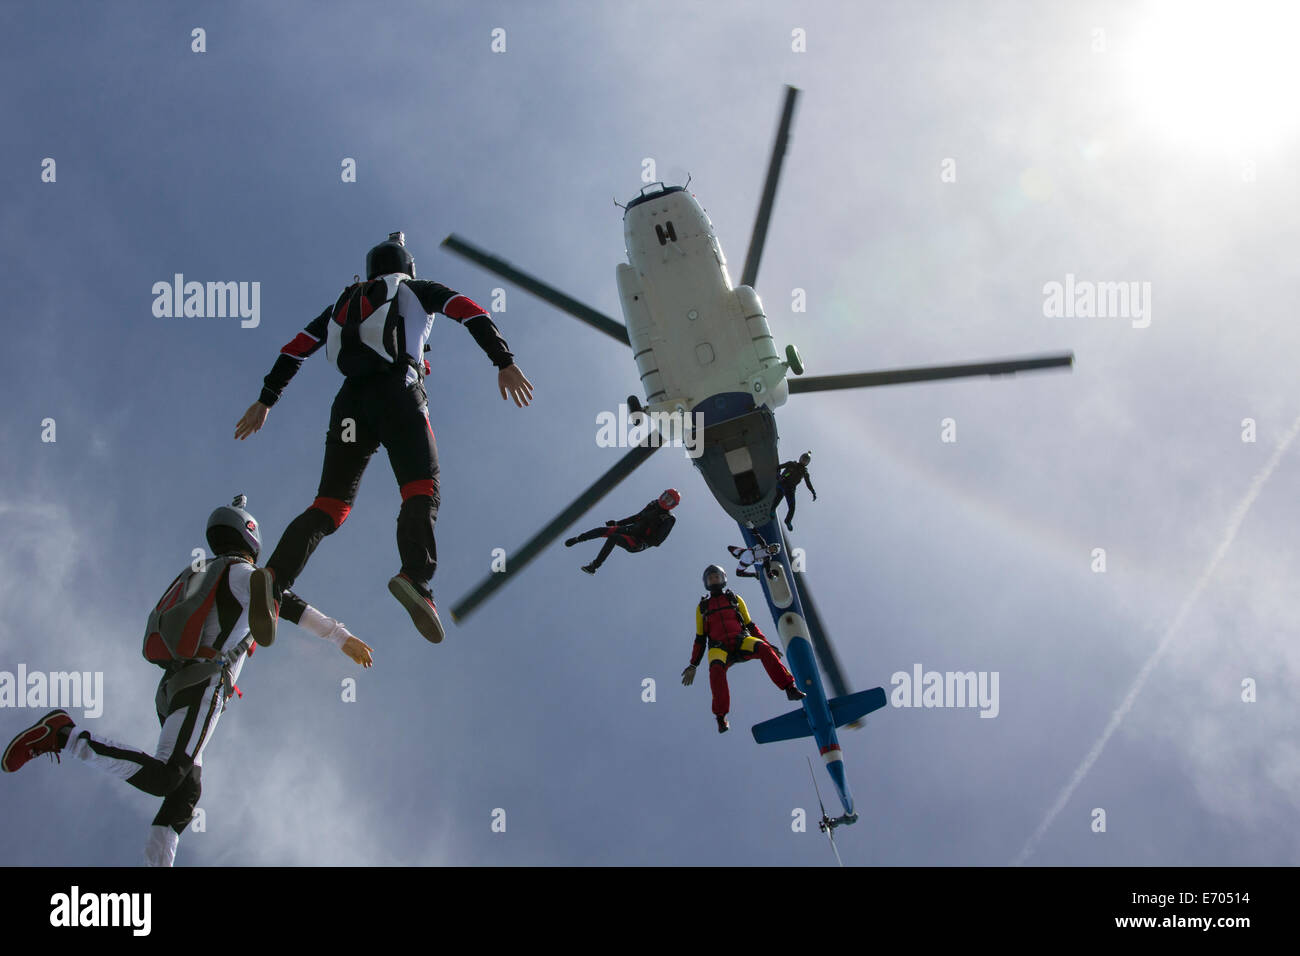 Basso angolo vista di elicottero e sei skydivers in caduta libera, Siofok, Somogy, Ungheria Foto Stock